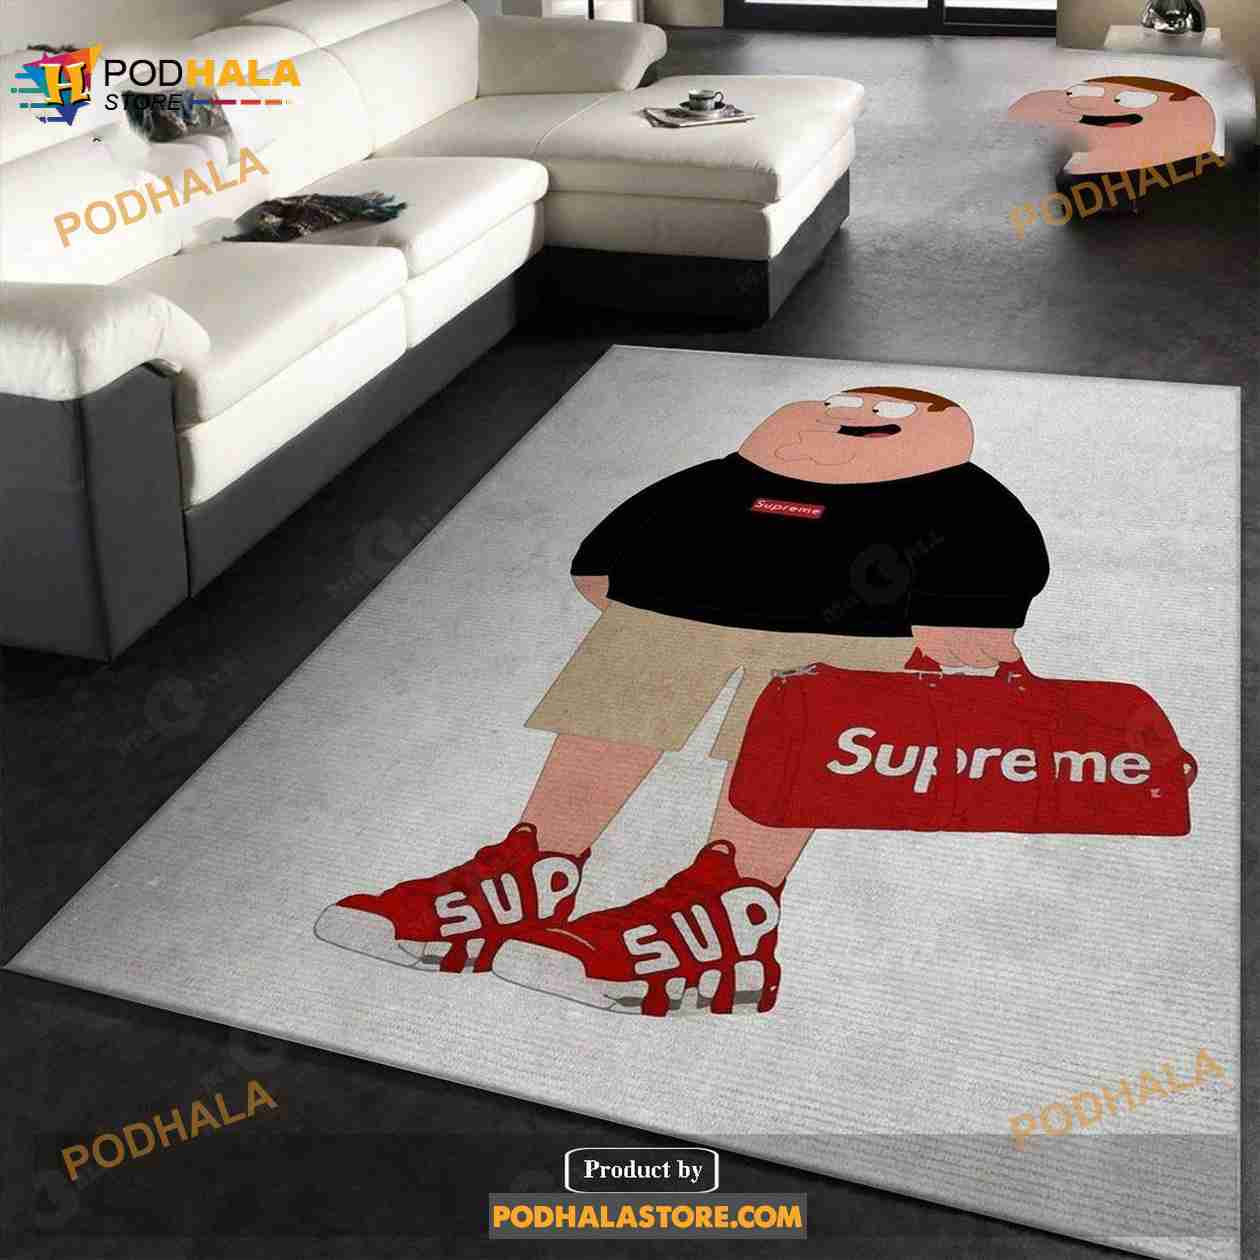 Supreme Peter Family Guy Rug Fashion Brand Rug Home Decor Gift